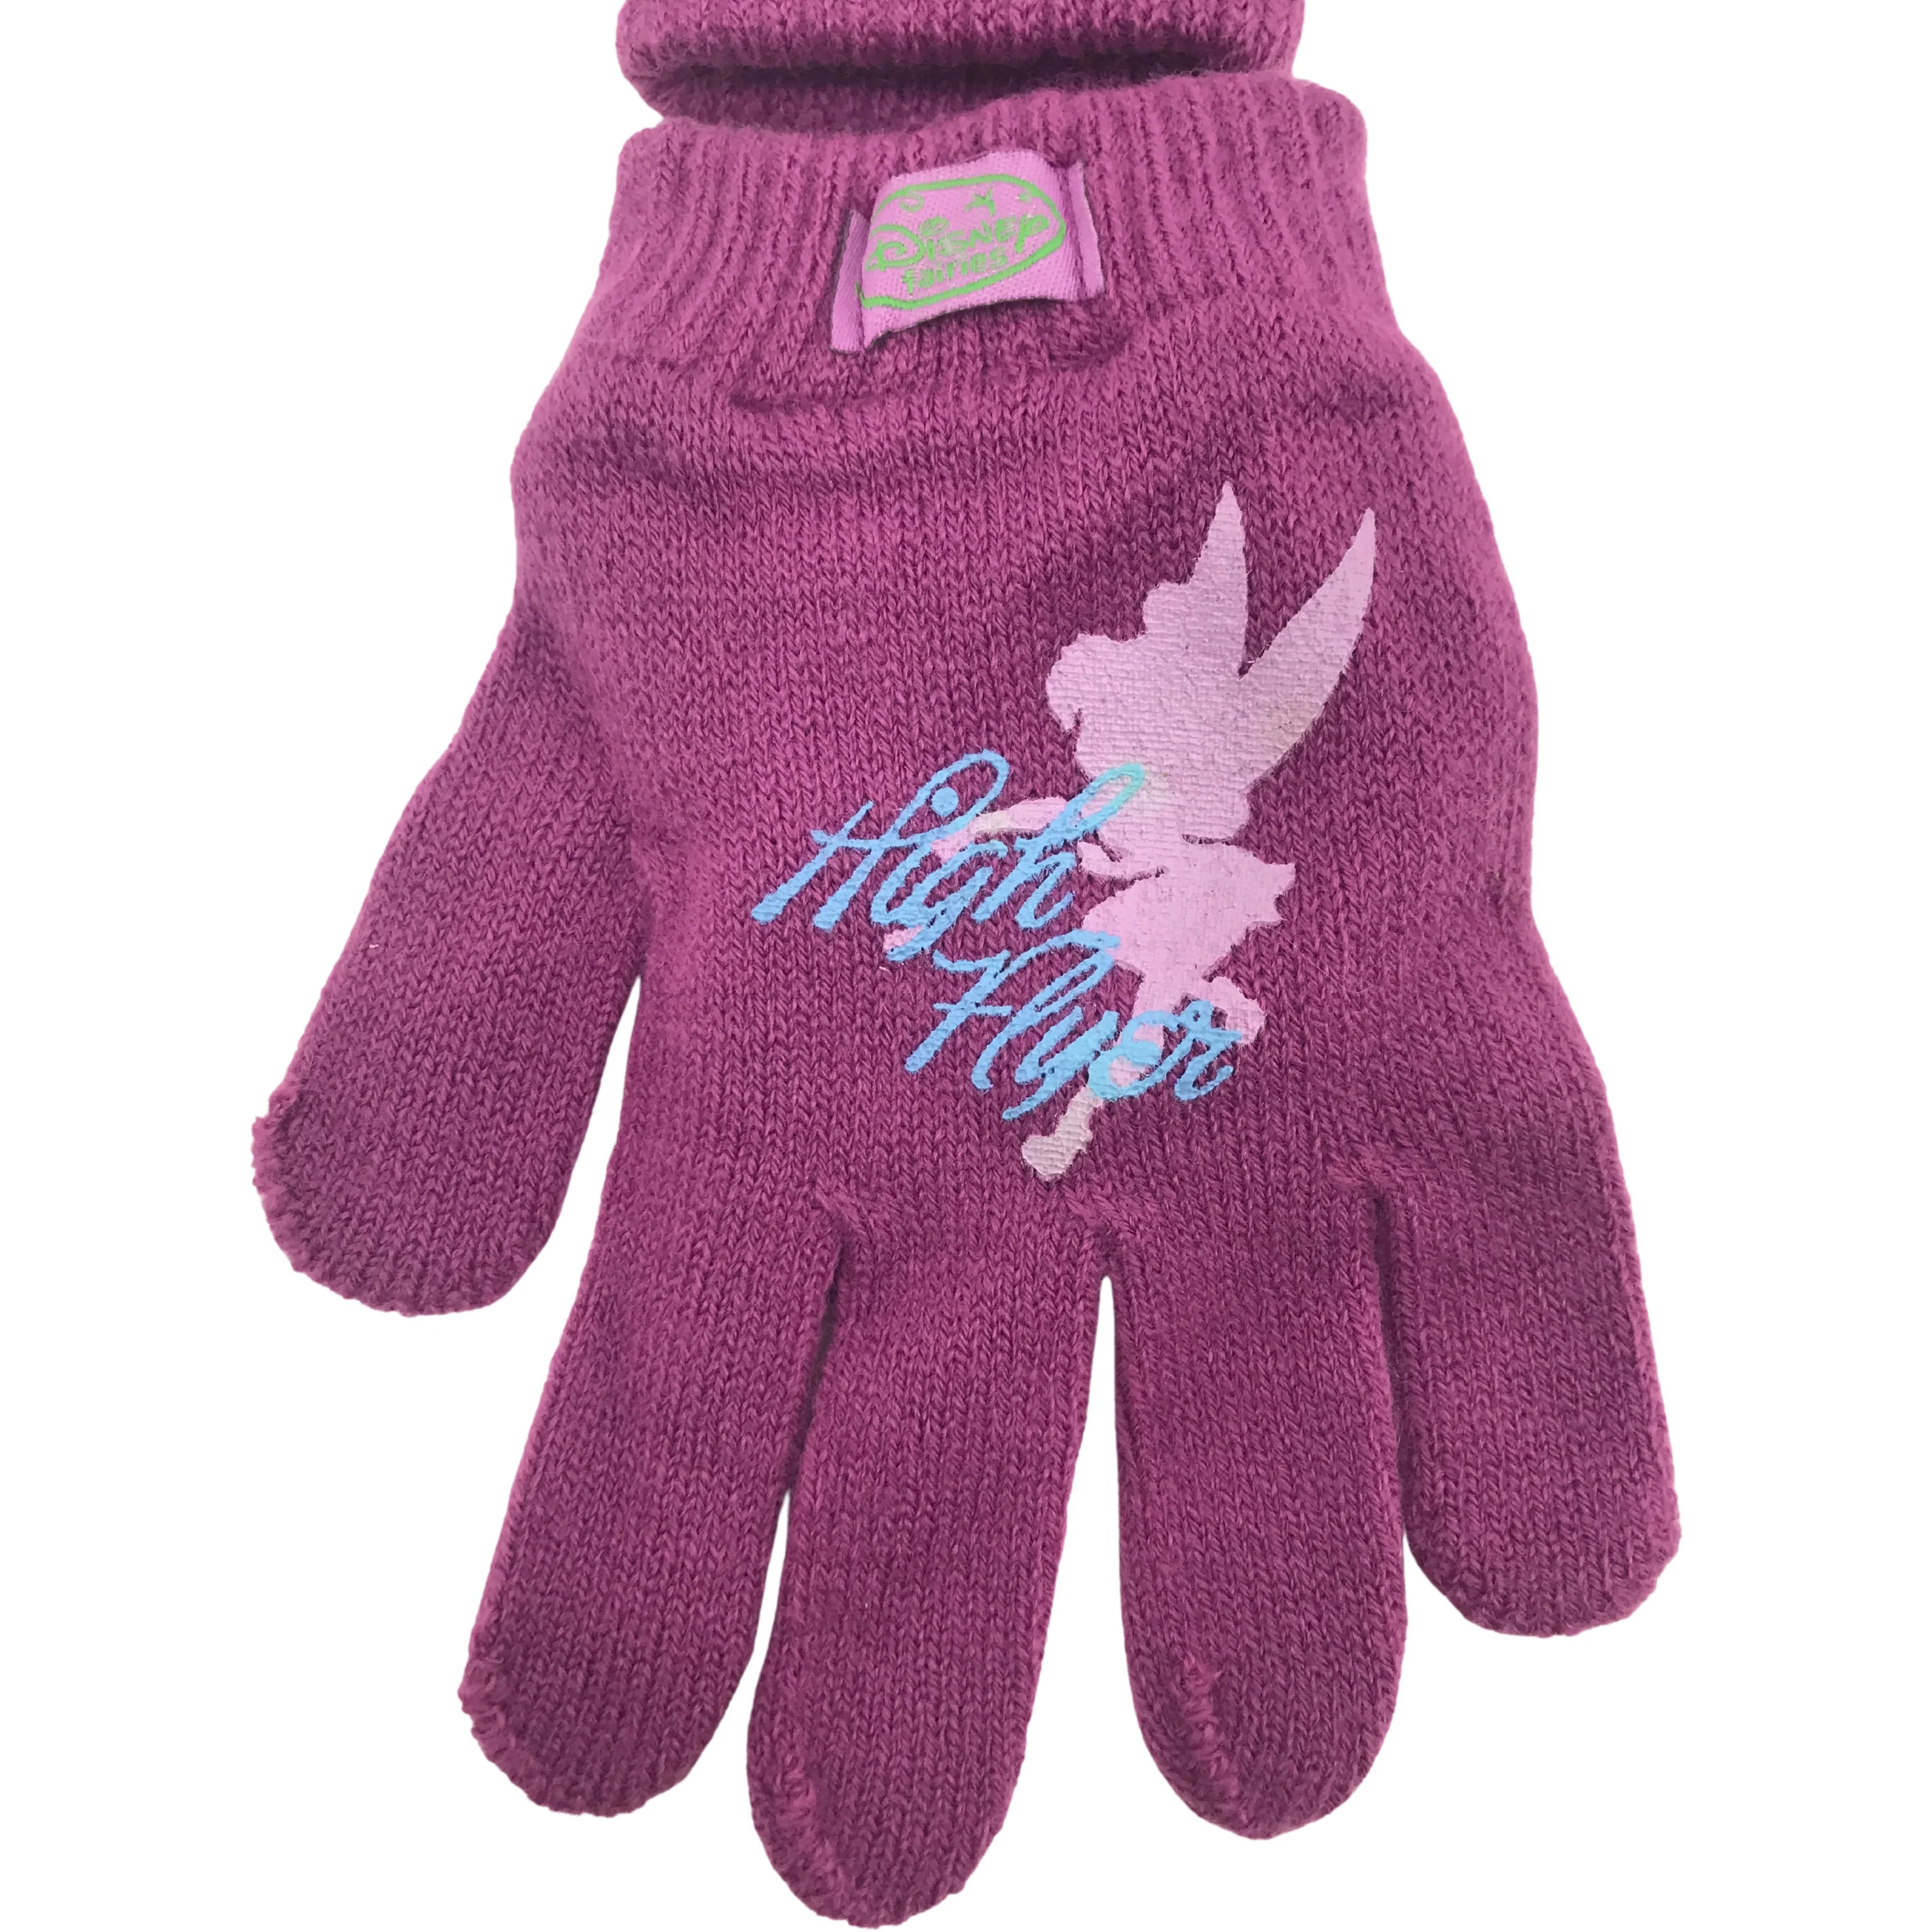 Disney Fairies Children's Winter Gloves / Girl's Gloves / Lightweight Gloves / Purple / One Size